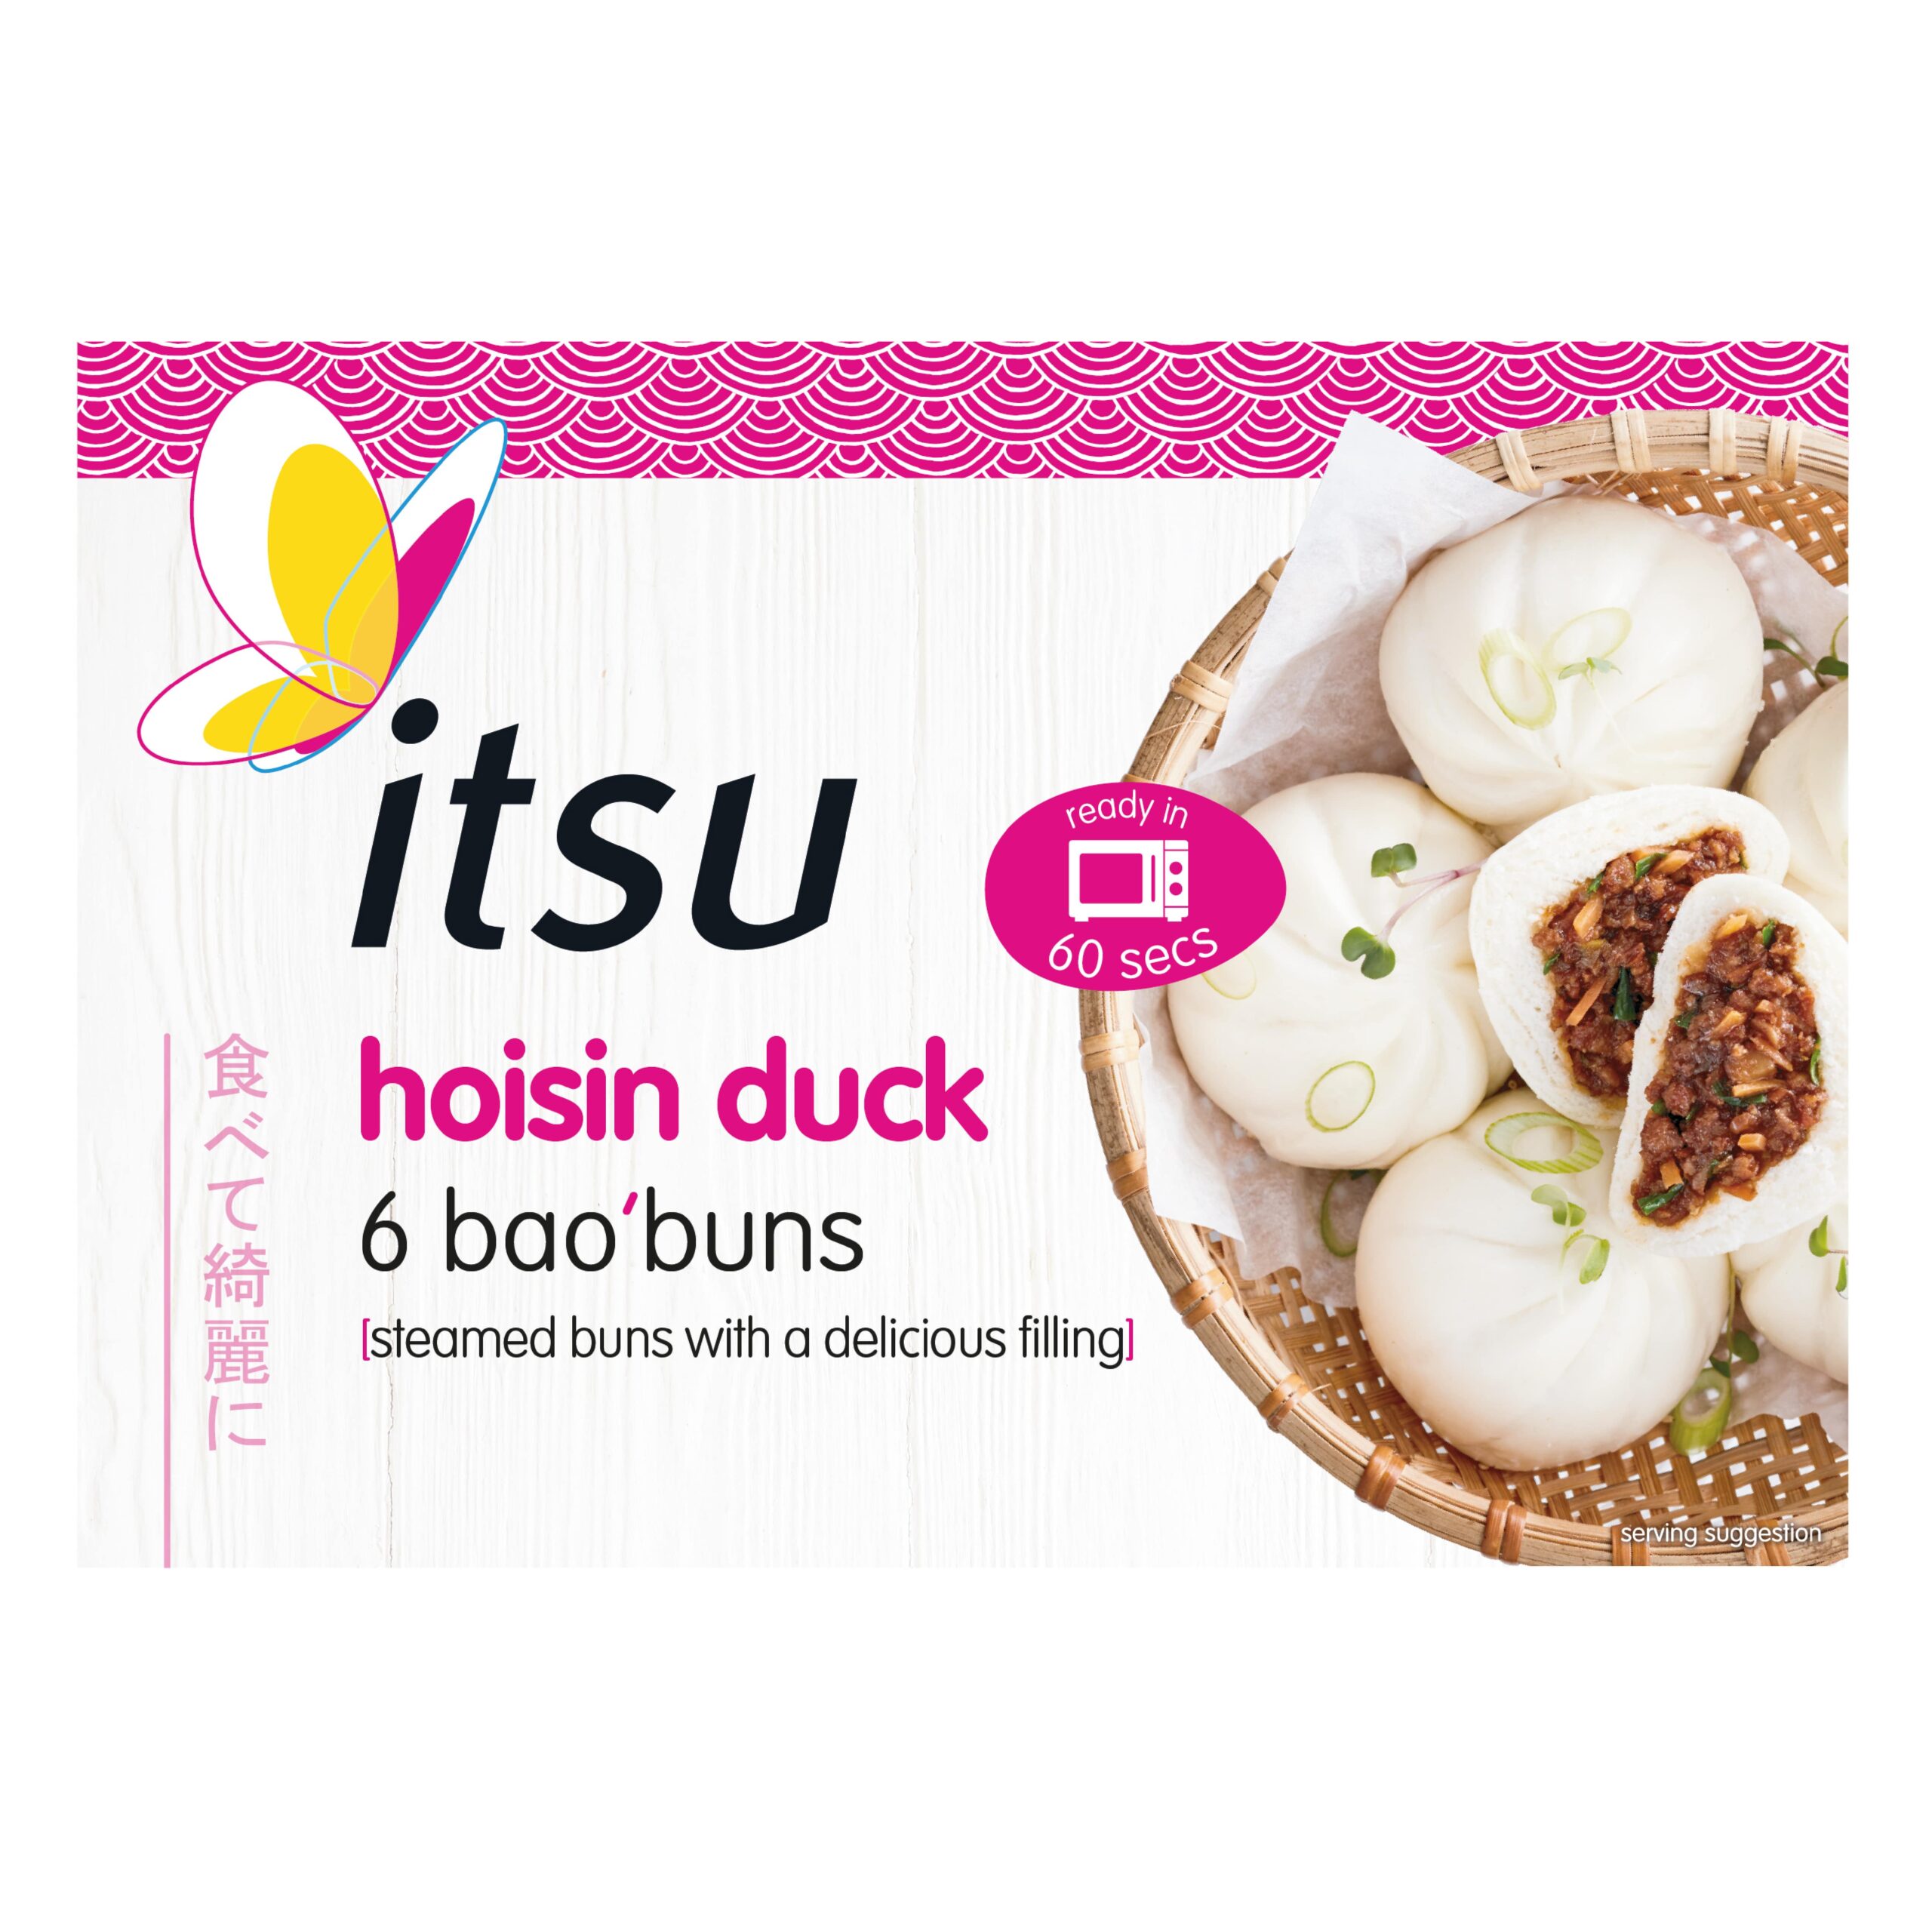 itsu bao buns